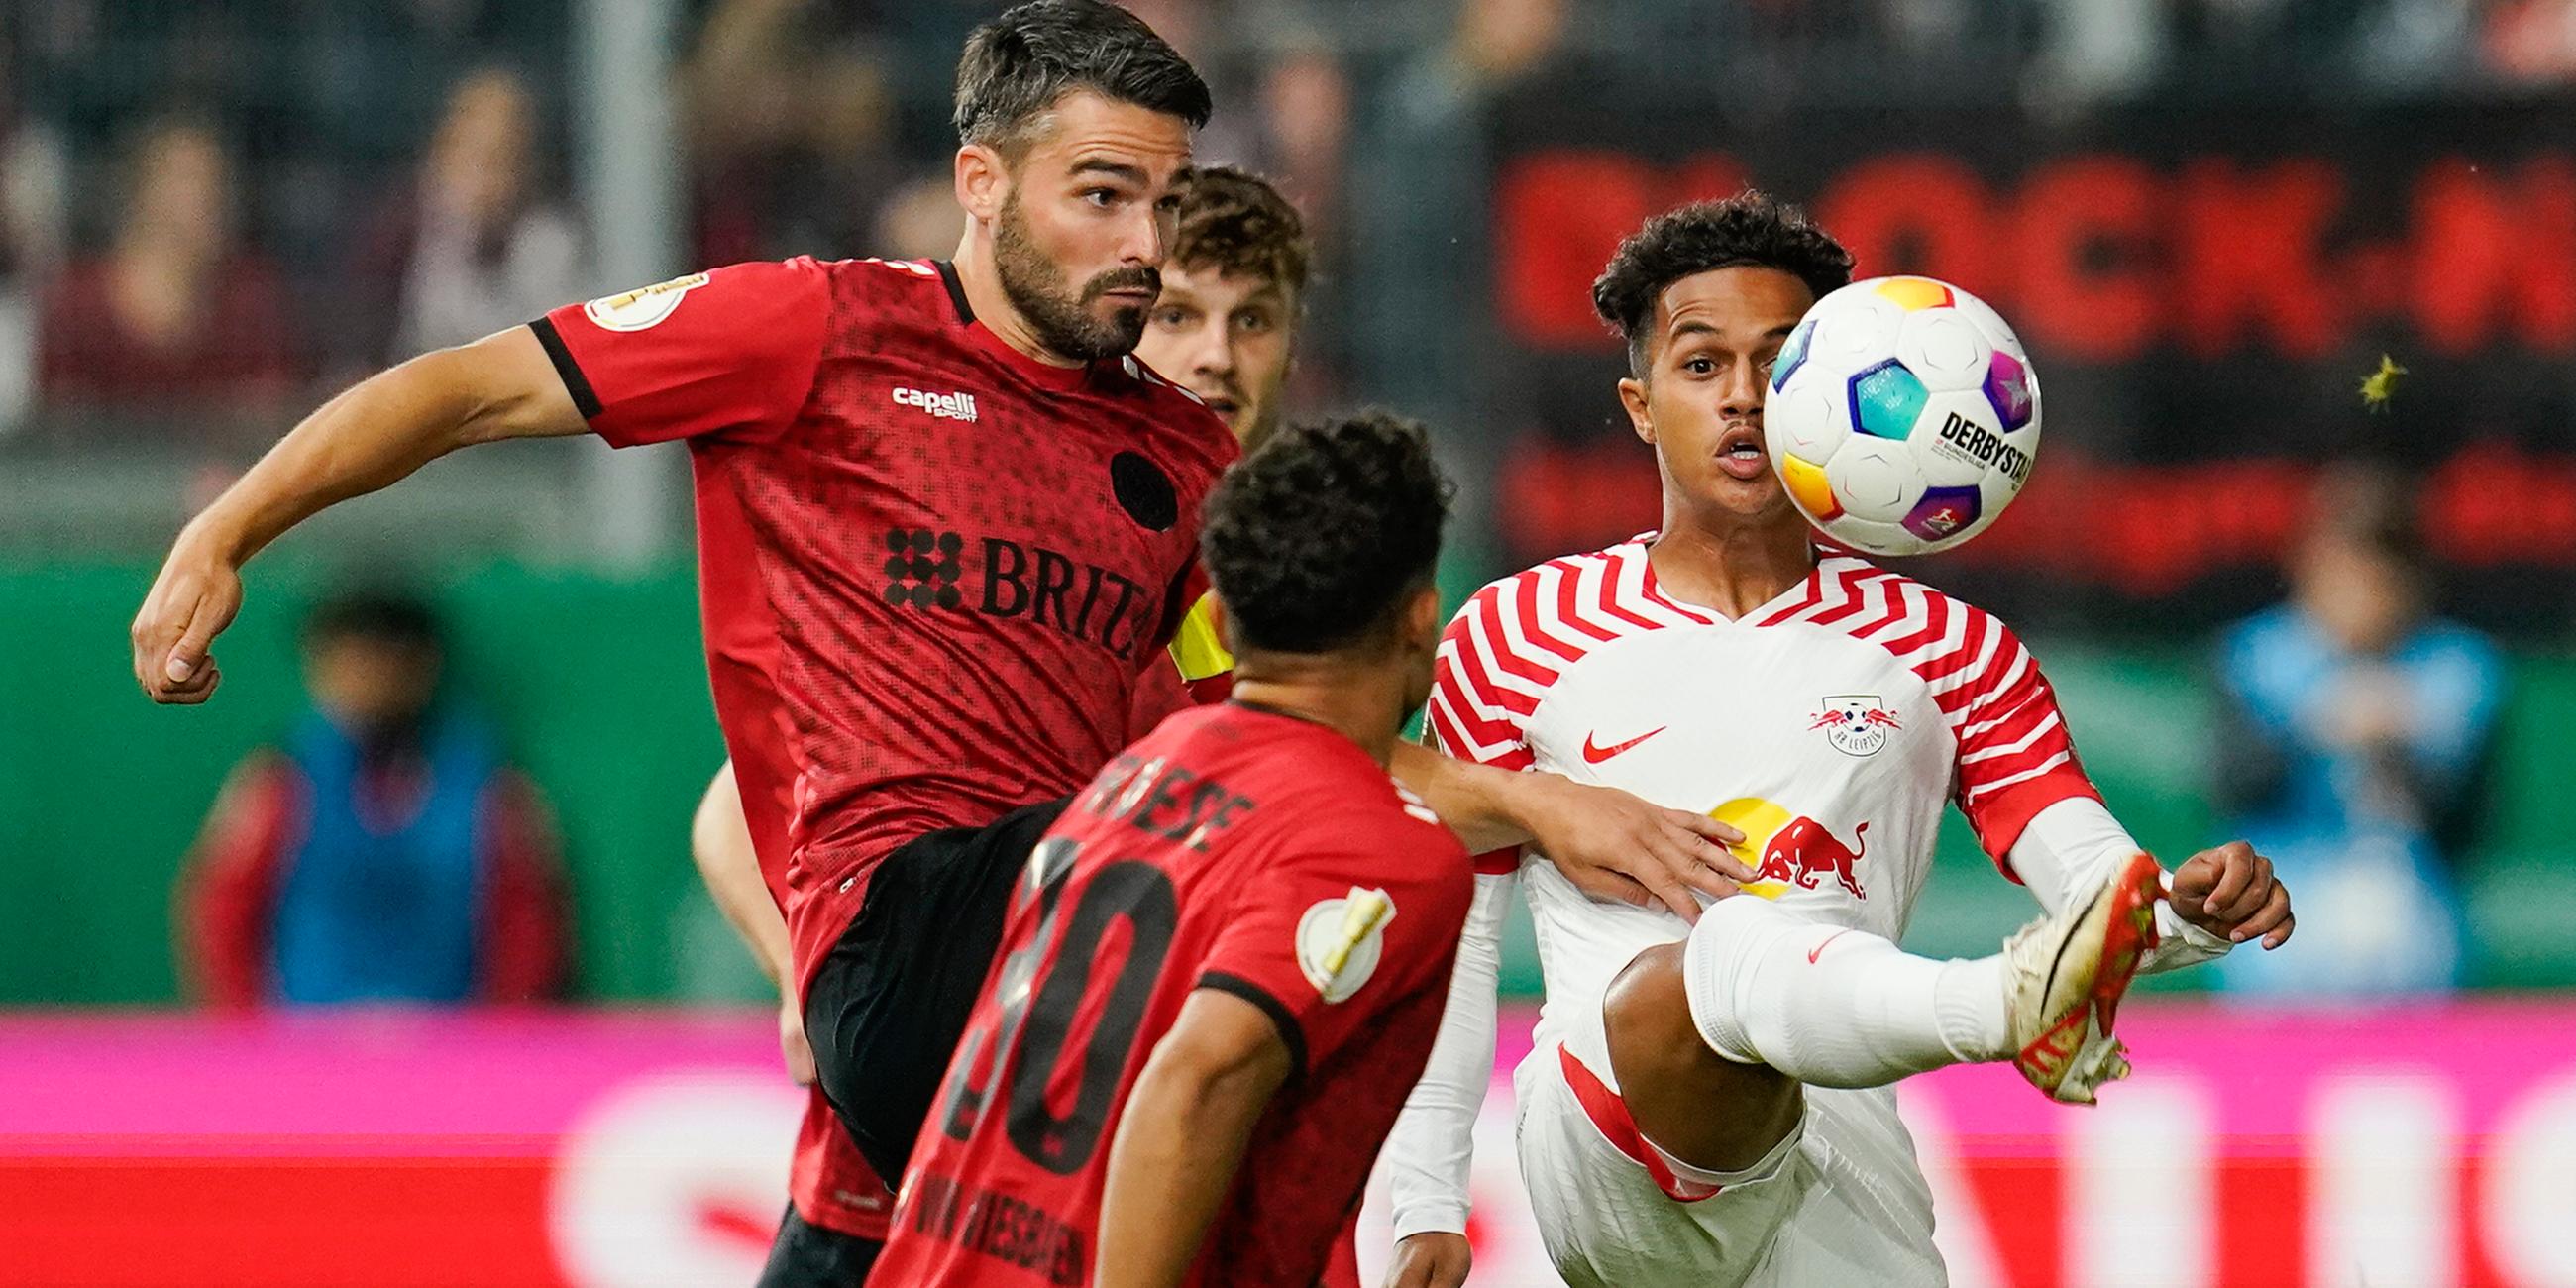 DFB-Pokal, SV Wehen Wiesbaden - RB Leipzig, 1. Runde: Wiesbadens Sascha Mockenhaupt (l.) und Leipzigs Fábio Carvalho kämpfen um den Ball.